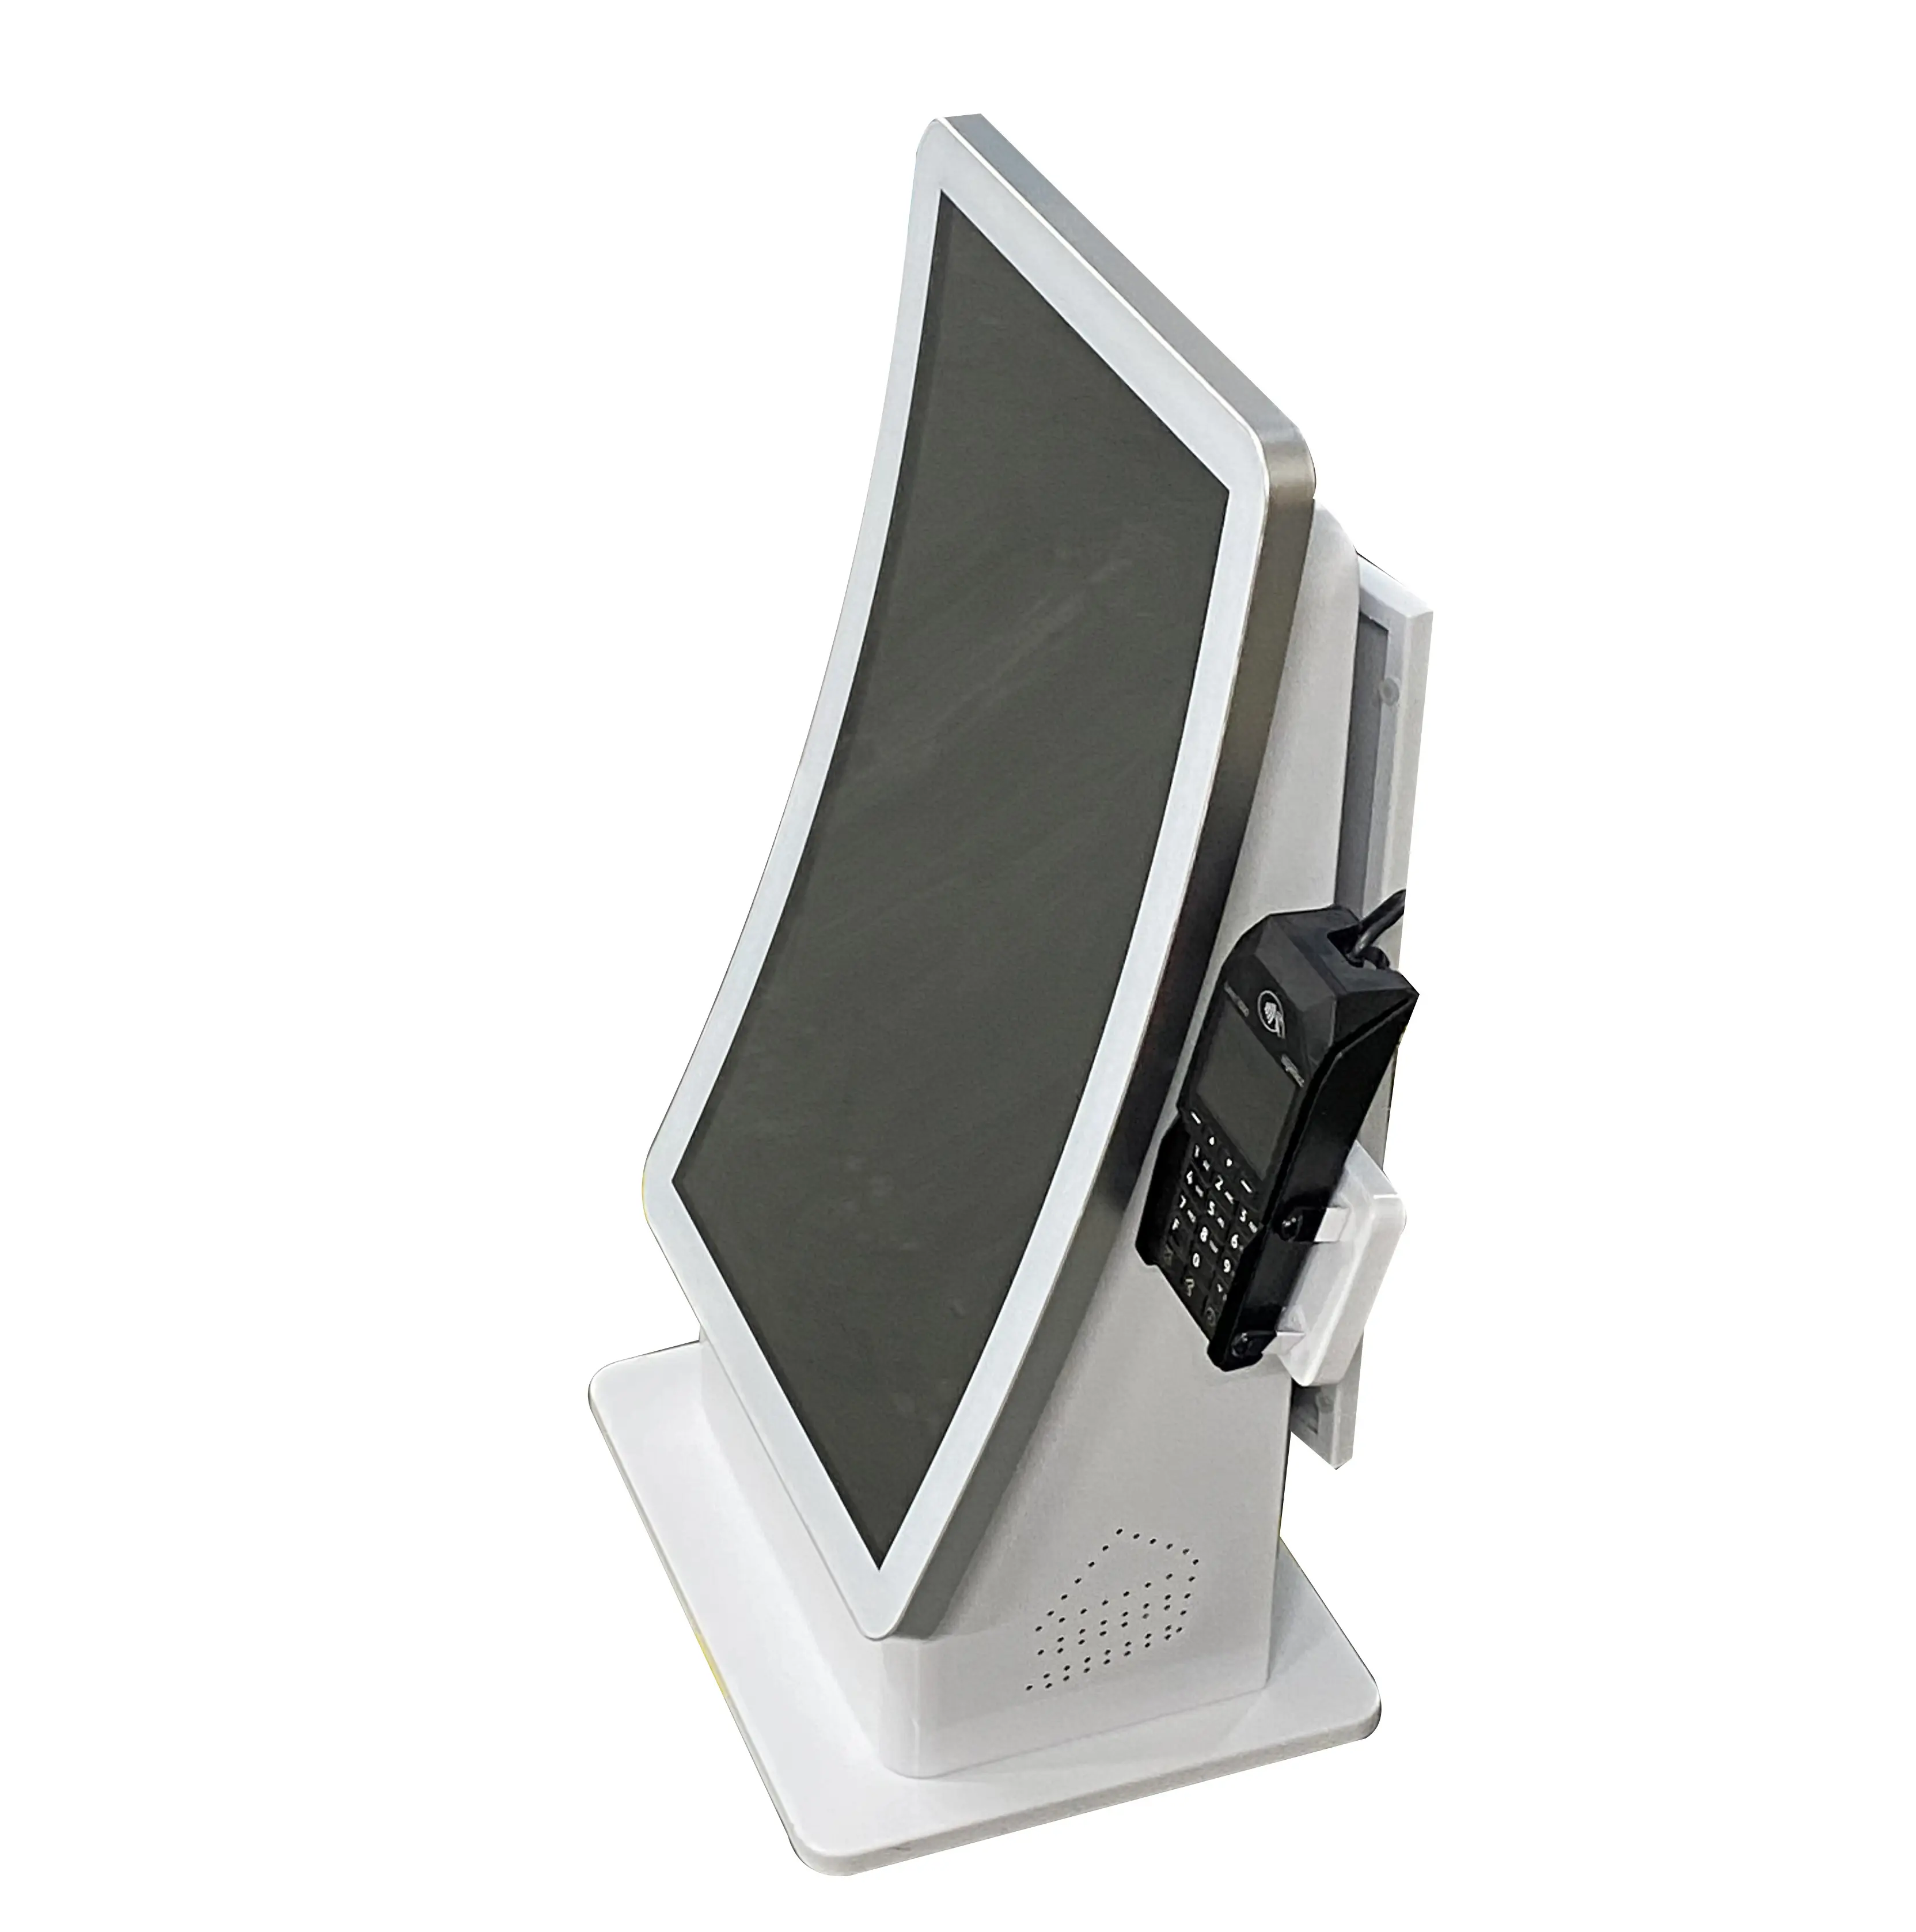 Kiosk de auto-serviço de desktop e mesa, 23.6 polegadas, tela sensível ao toque curvada, design de autoencomenda, para alimentos rápidos